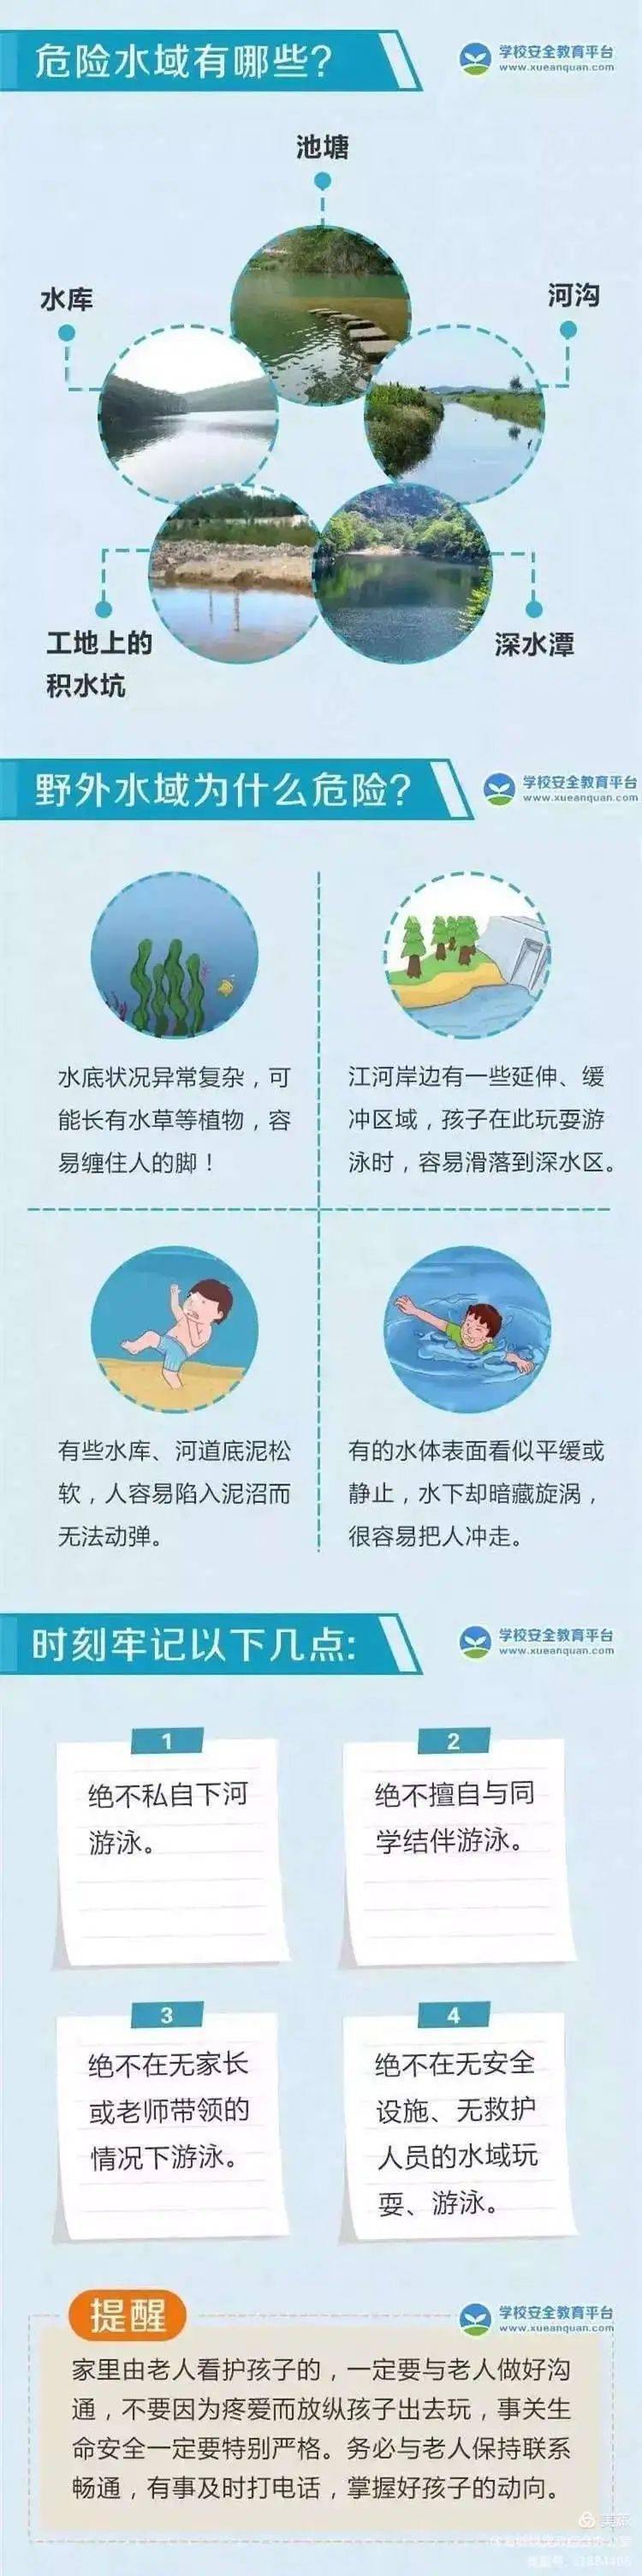 海丰县海城镇发布 紧急通告 有关莲花山饮用水源...